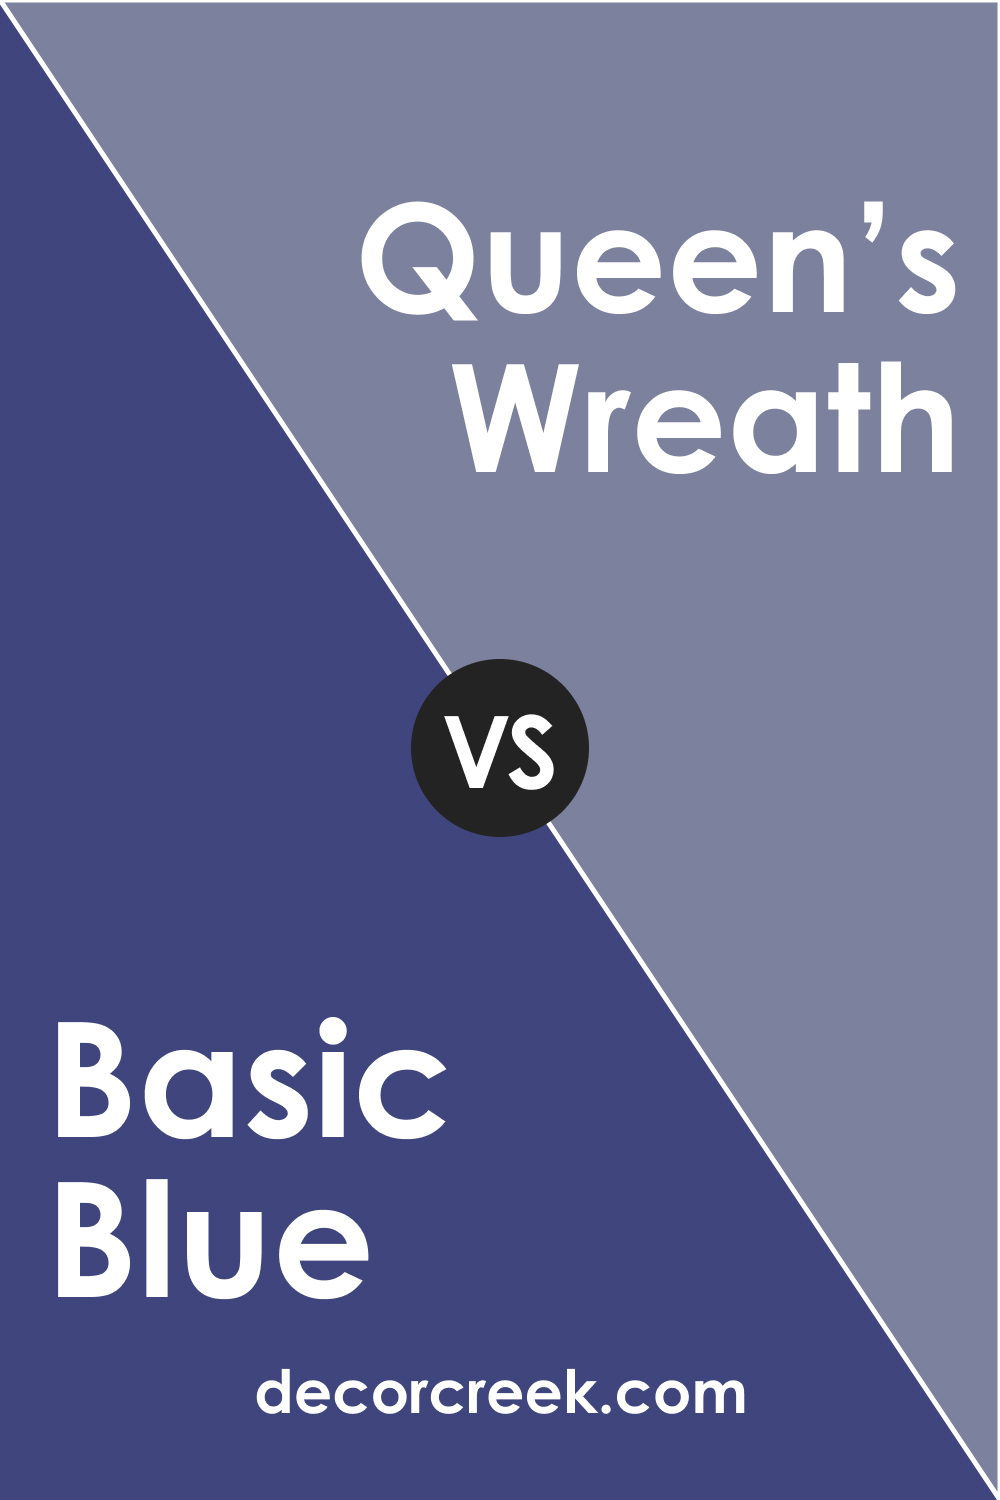 Basic Blue CC-968 vs. BM 1426 Queen’s Wreath